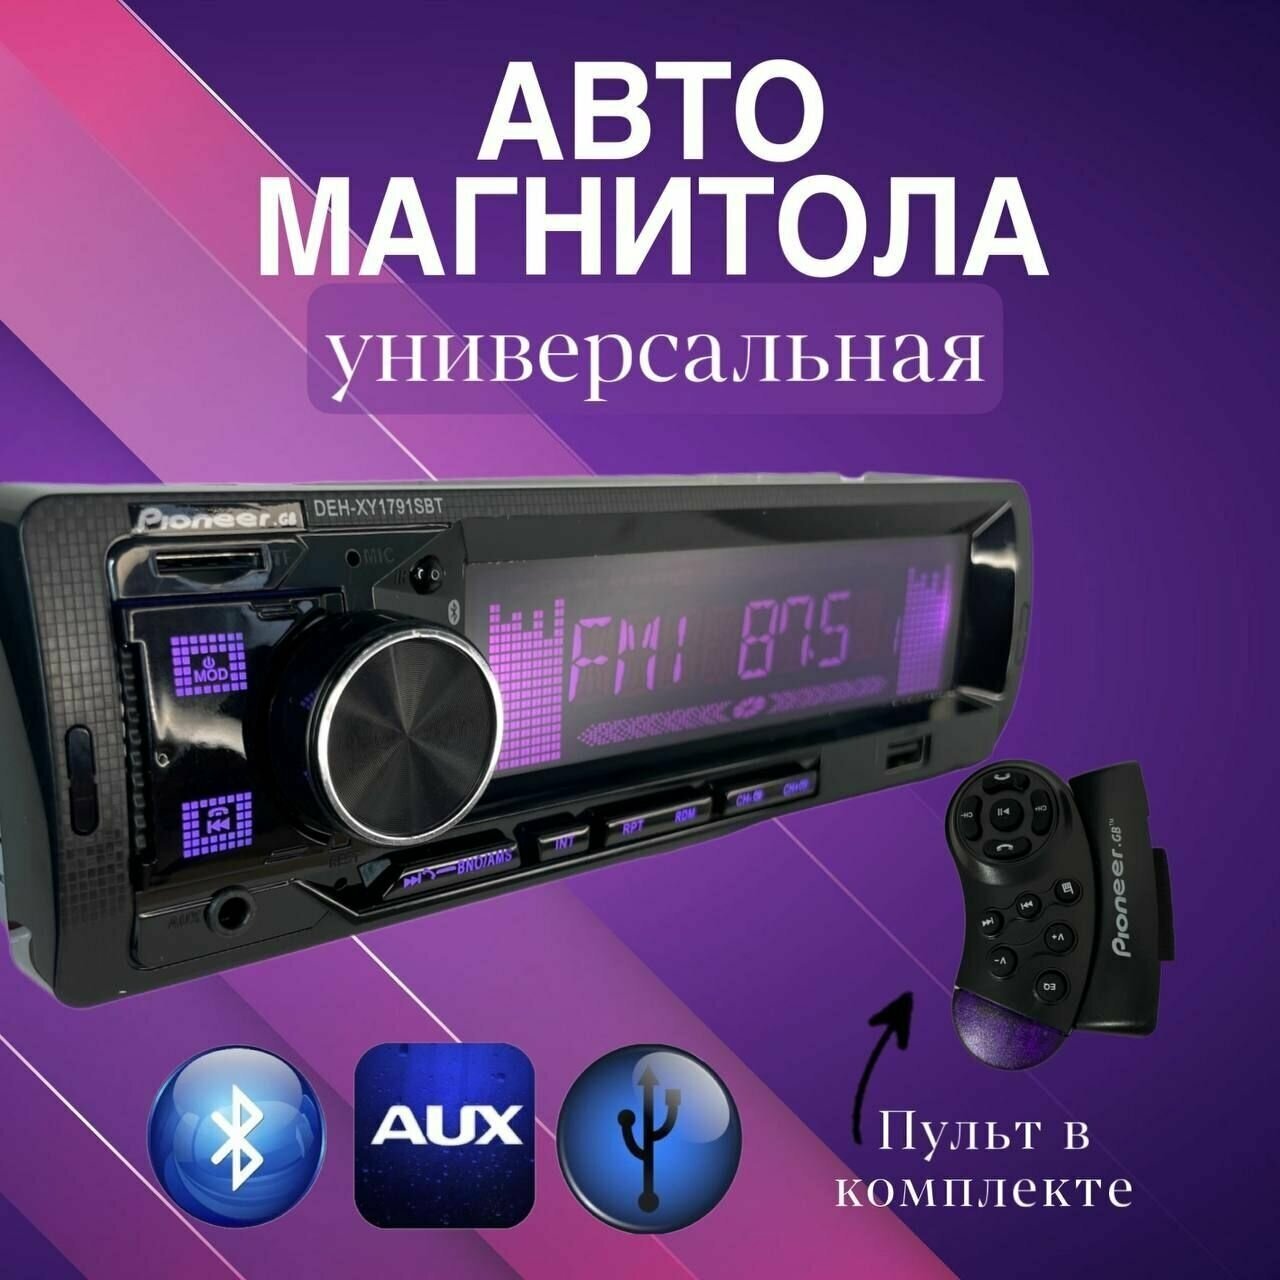 Автомагнитола DEH-XY1791/ Автомагнитола 1 Din с Bluetooth/ Магнитола для автомобиля 1 DIN Bluetooth AUX Флешка